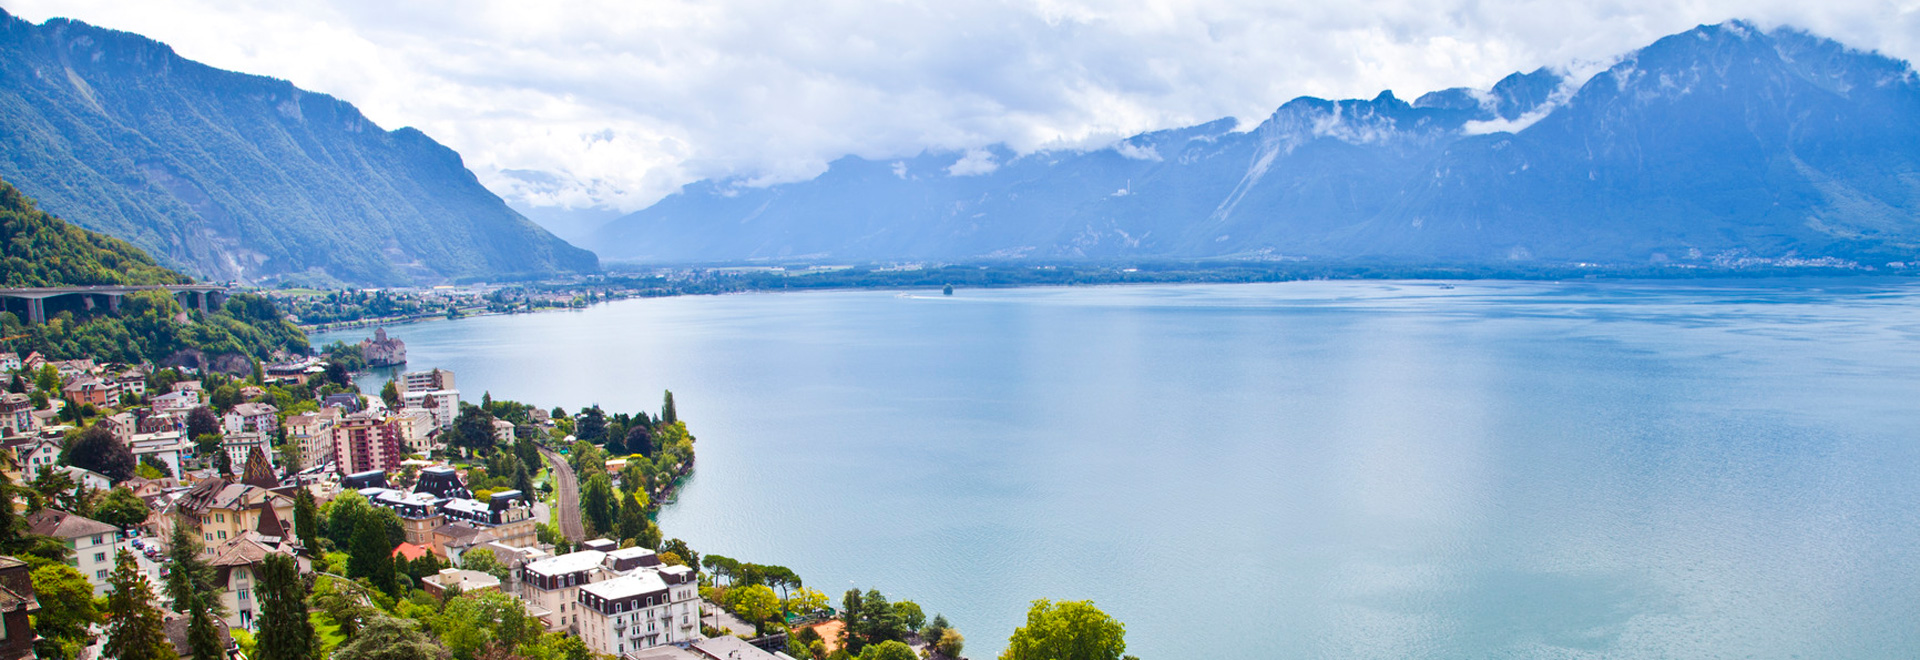 Suisse Romande : région idéale pour une vie paisible